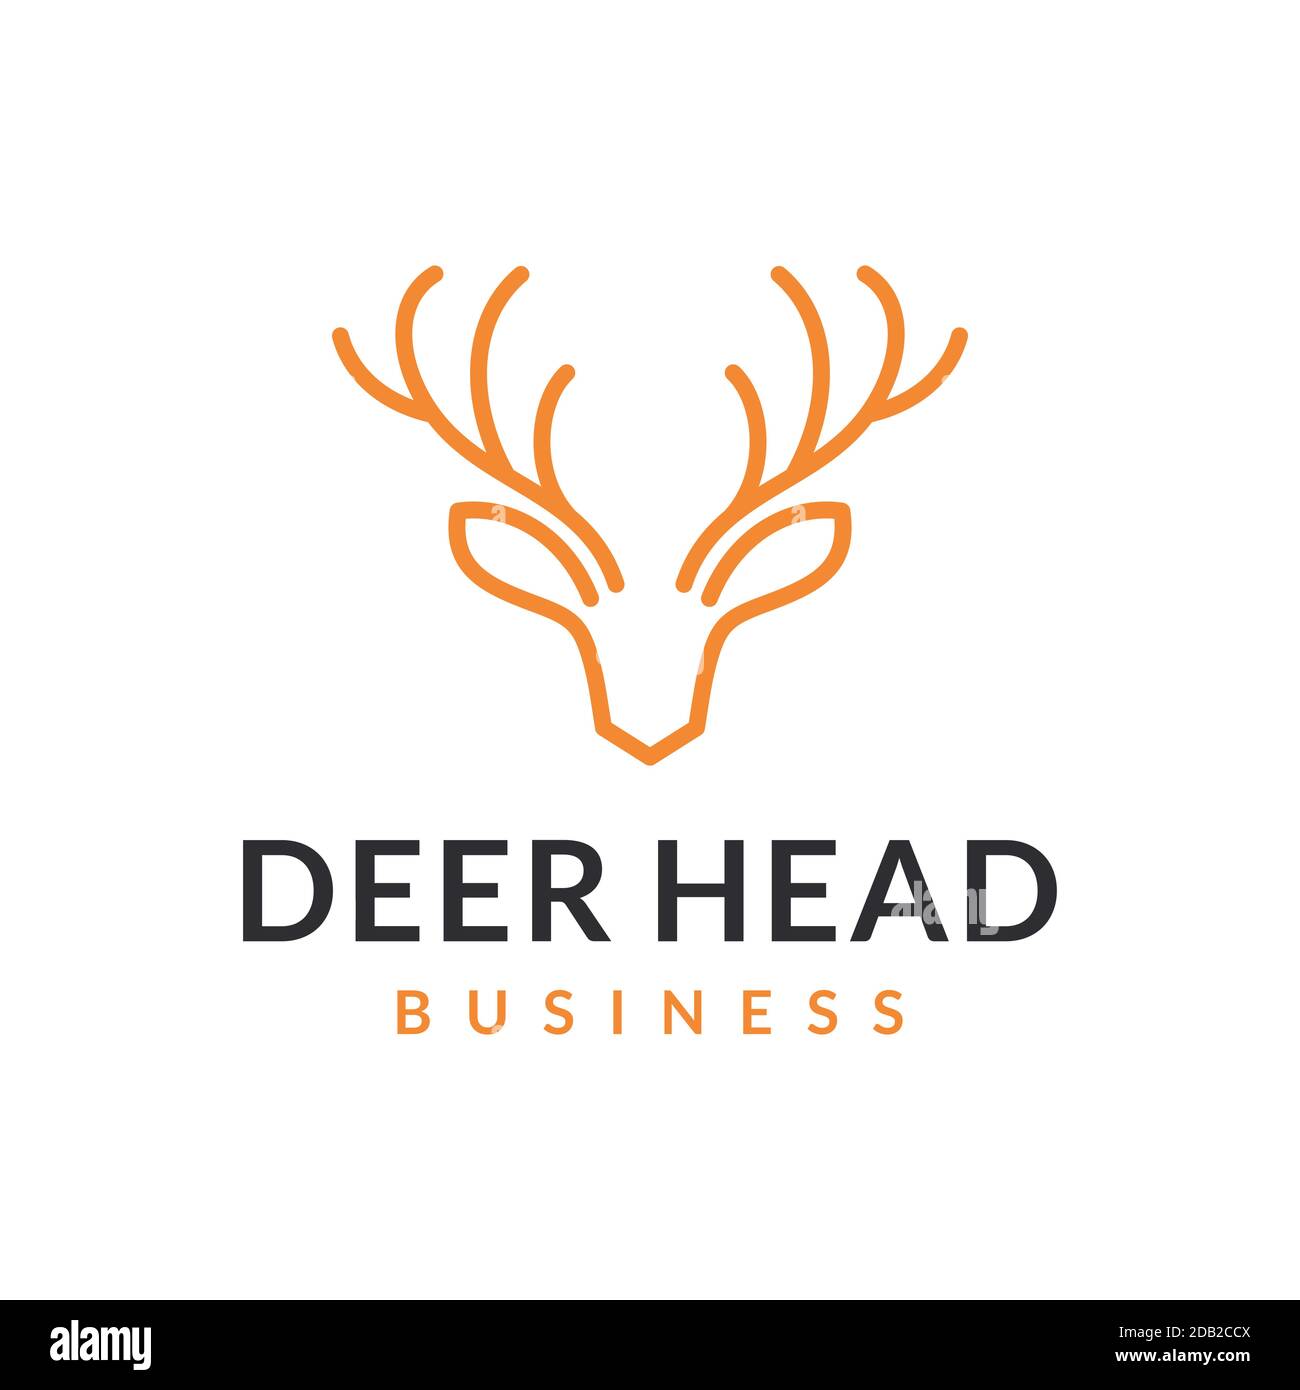 Deer antlers vector logo design line art style Stock Vector